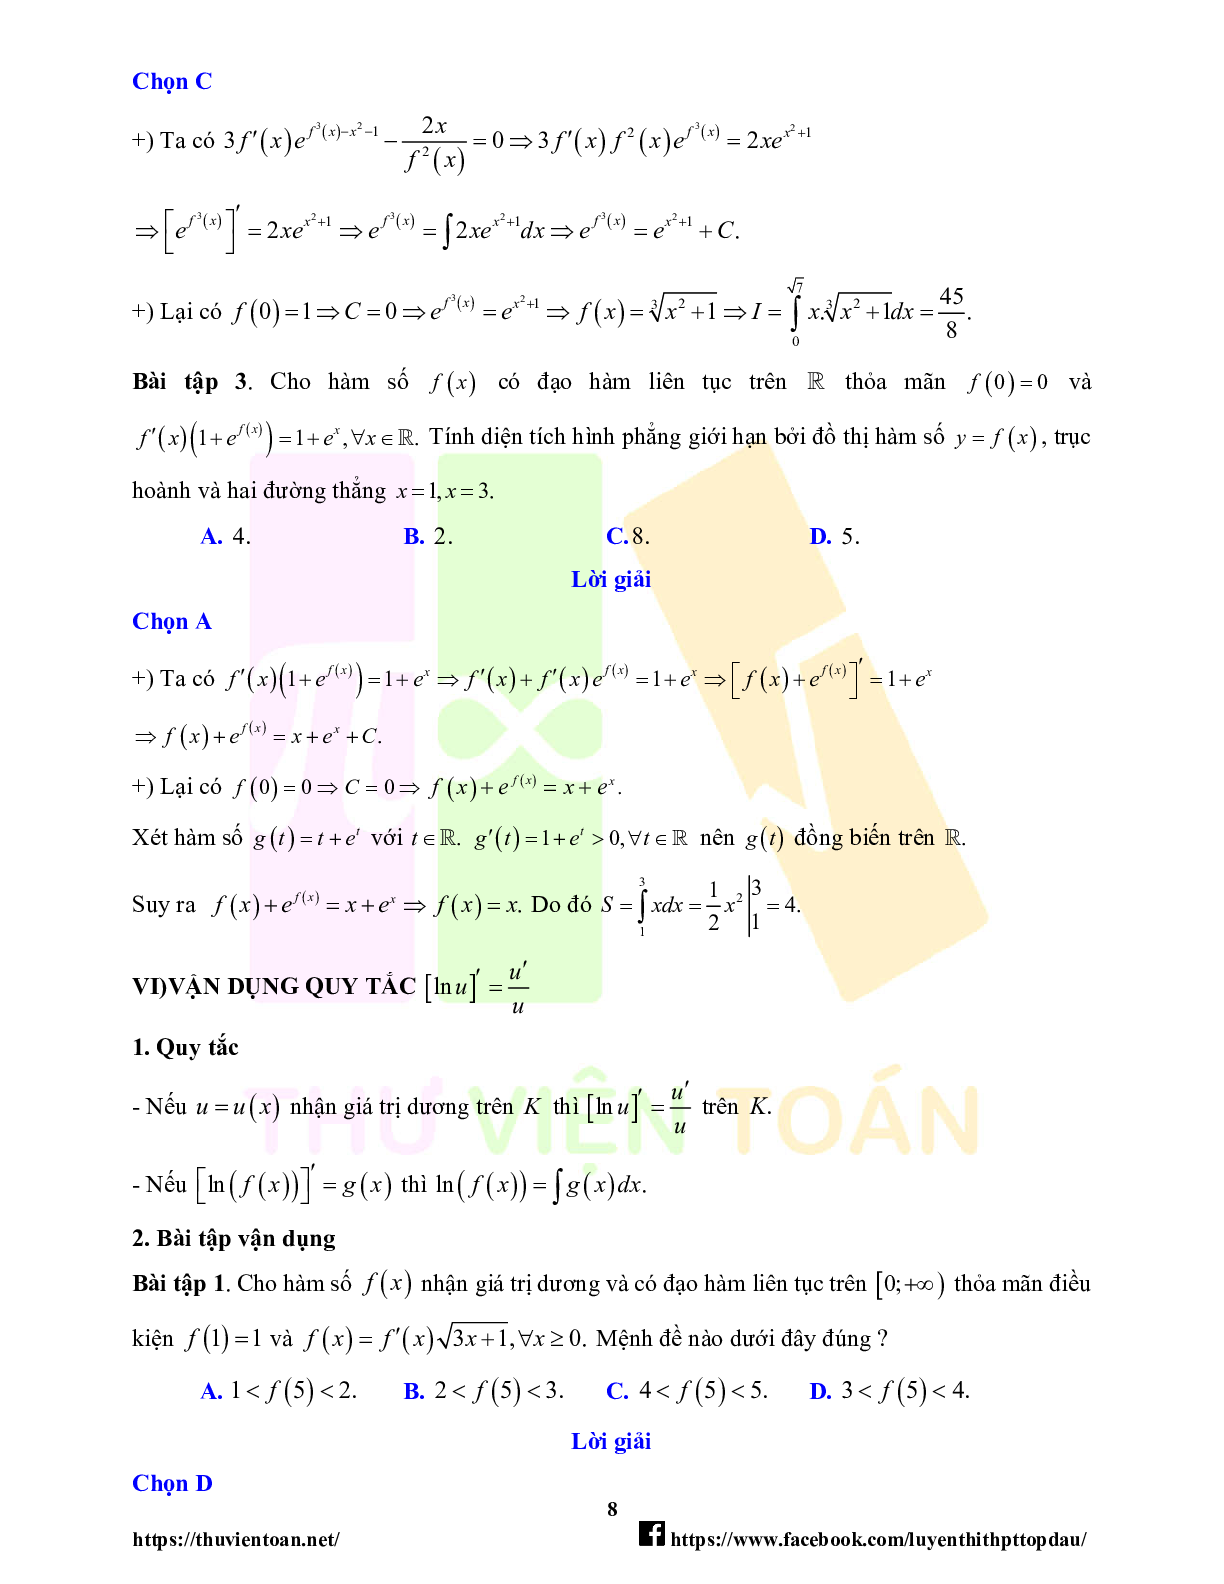 Lý thuyết và bài tập về quy tắc đạo hàm trong bài toán tích phân - có đáp án chi tiết (trang 8)